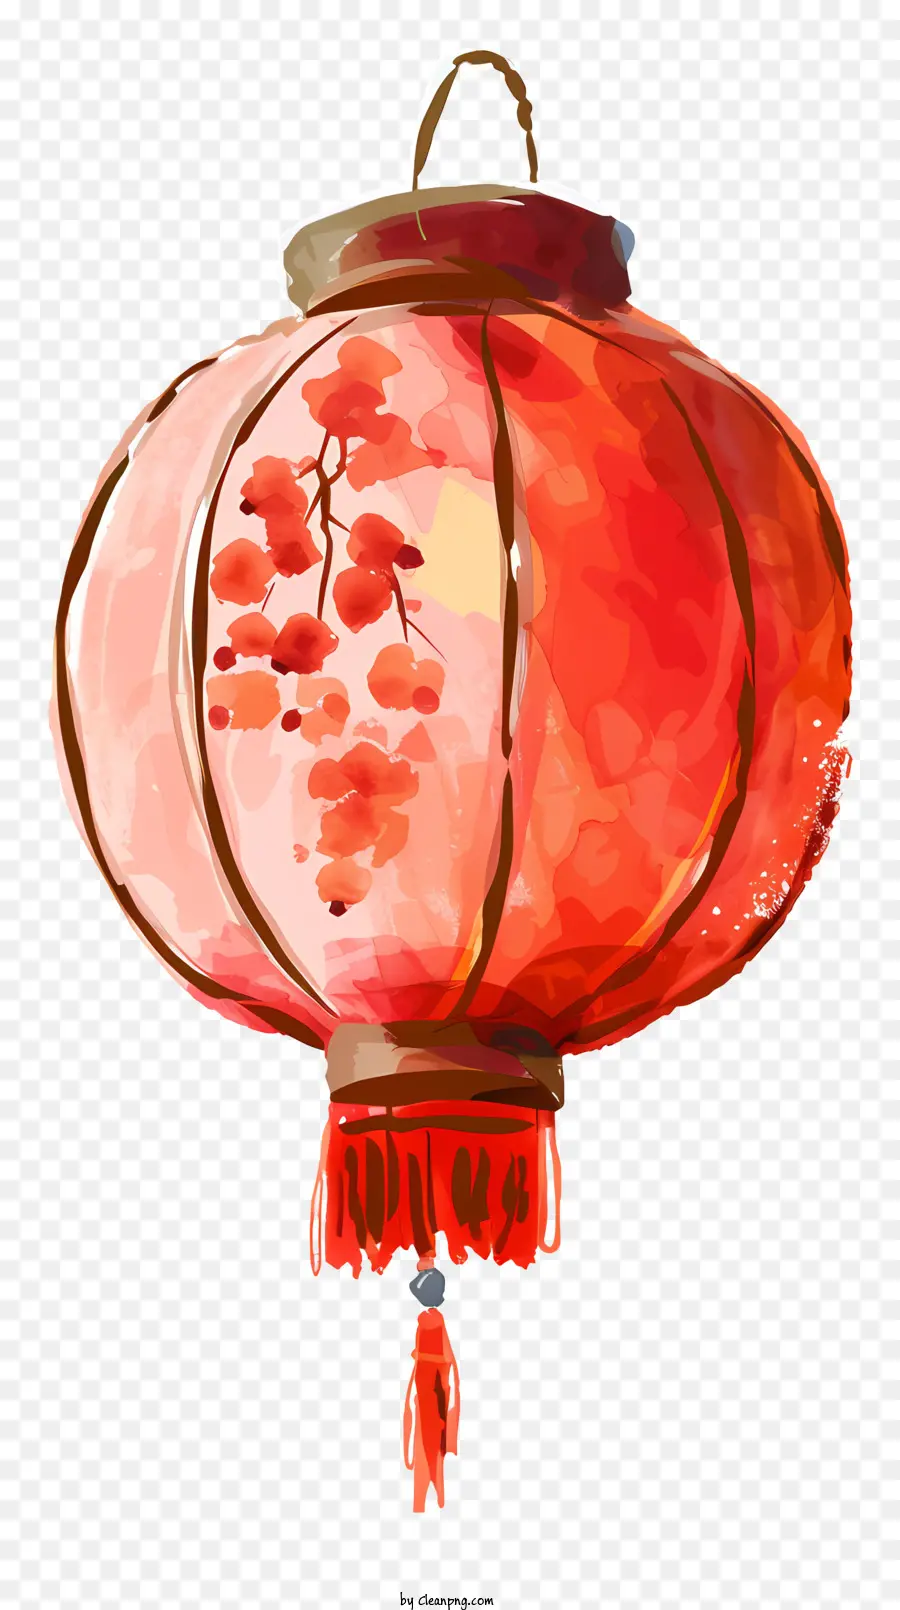 lanterna cinese - Lanterna cinese rossa con accenti d'oro e frangia